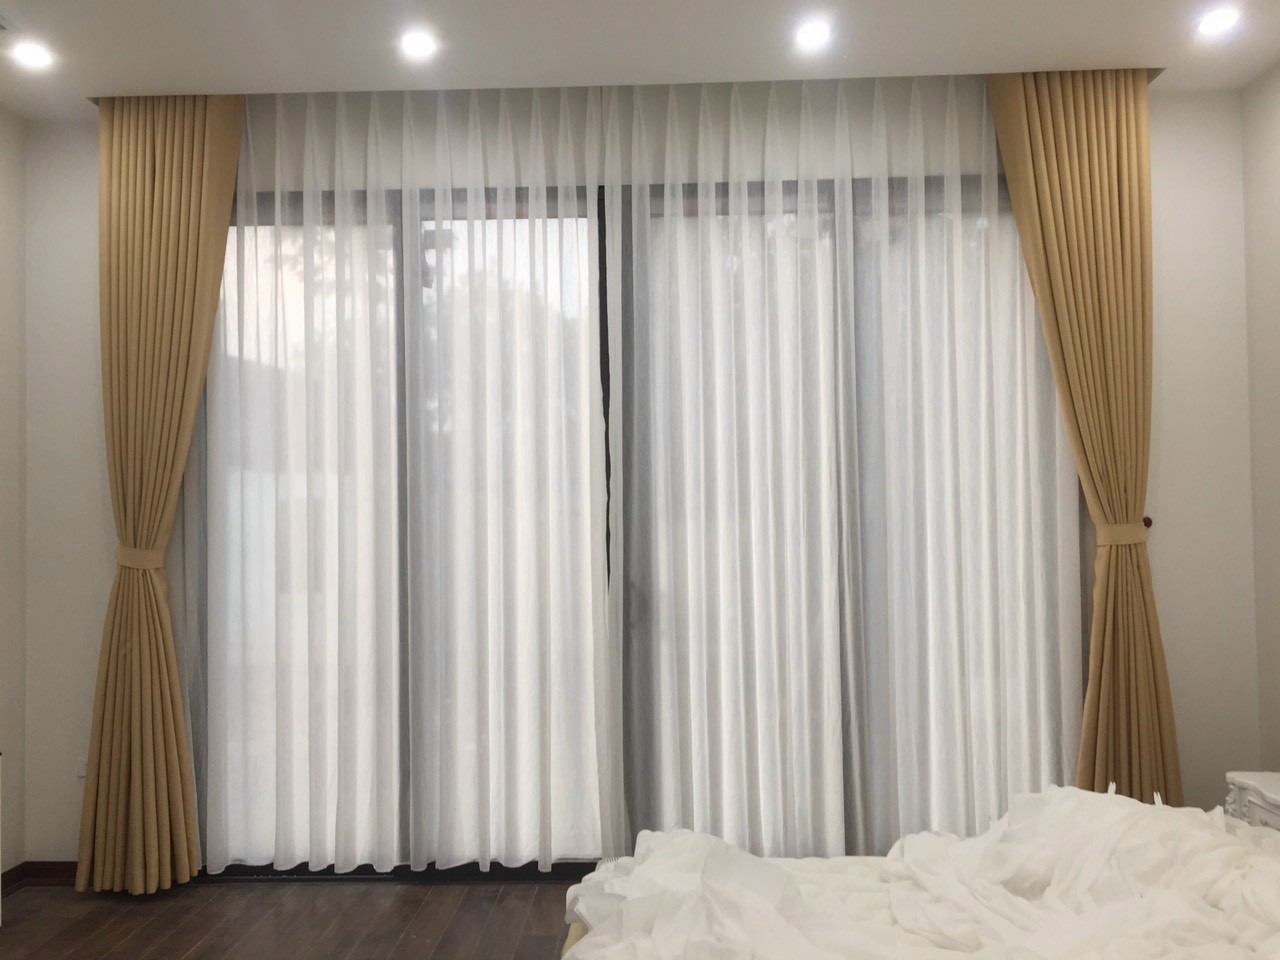 Rèm vải phòng ngủ cản sáng tốt tại Lạng Sơn